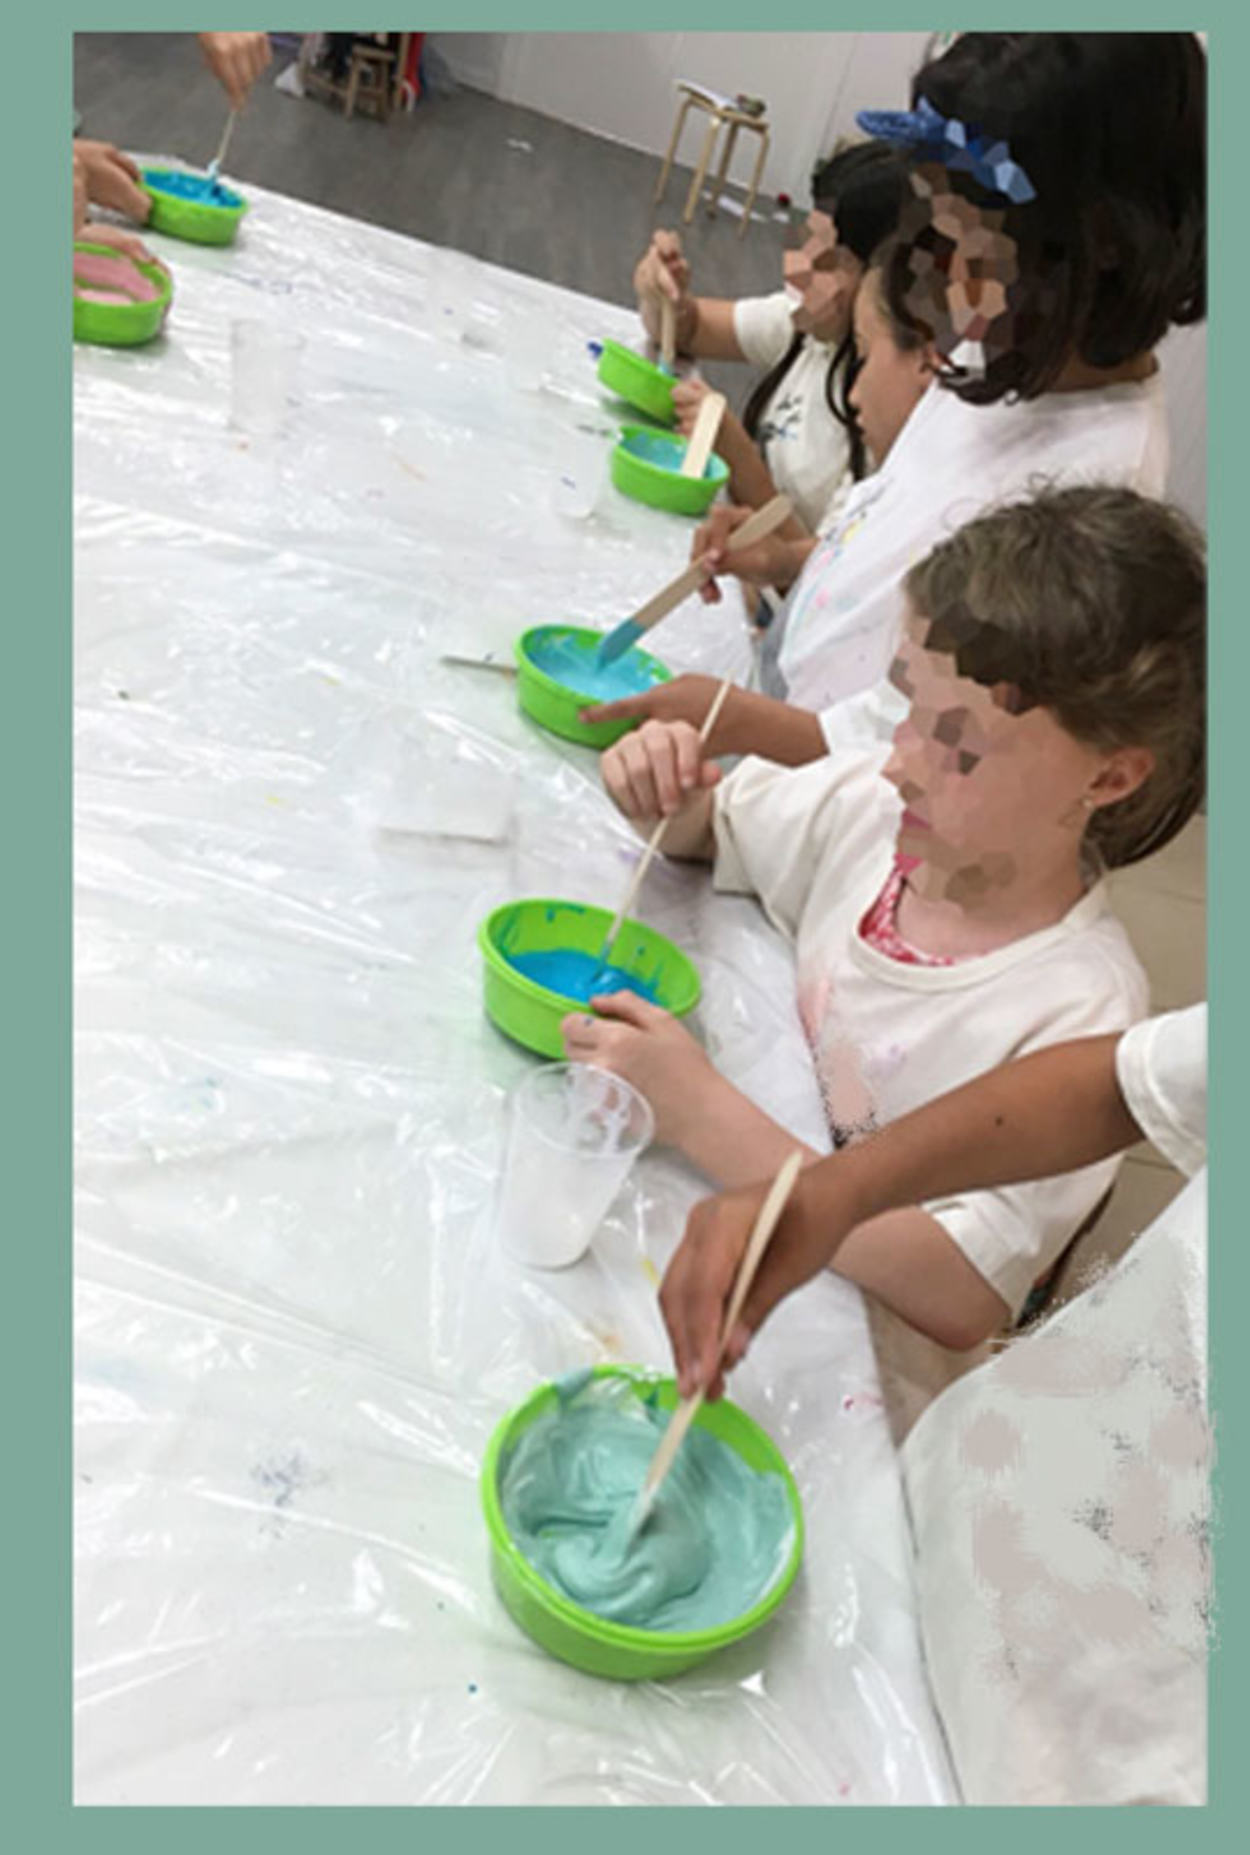 Com fer slime a casa en 5 passos simples-2 slime, manualitats infantils, manualitats per a nens, activitats infantils, tallers per a nens